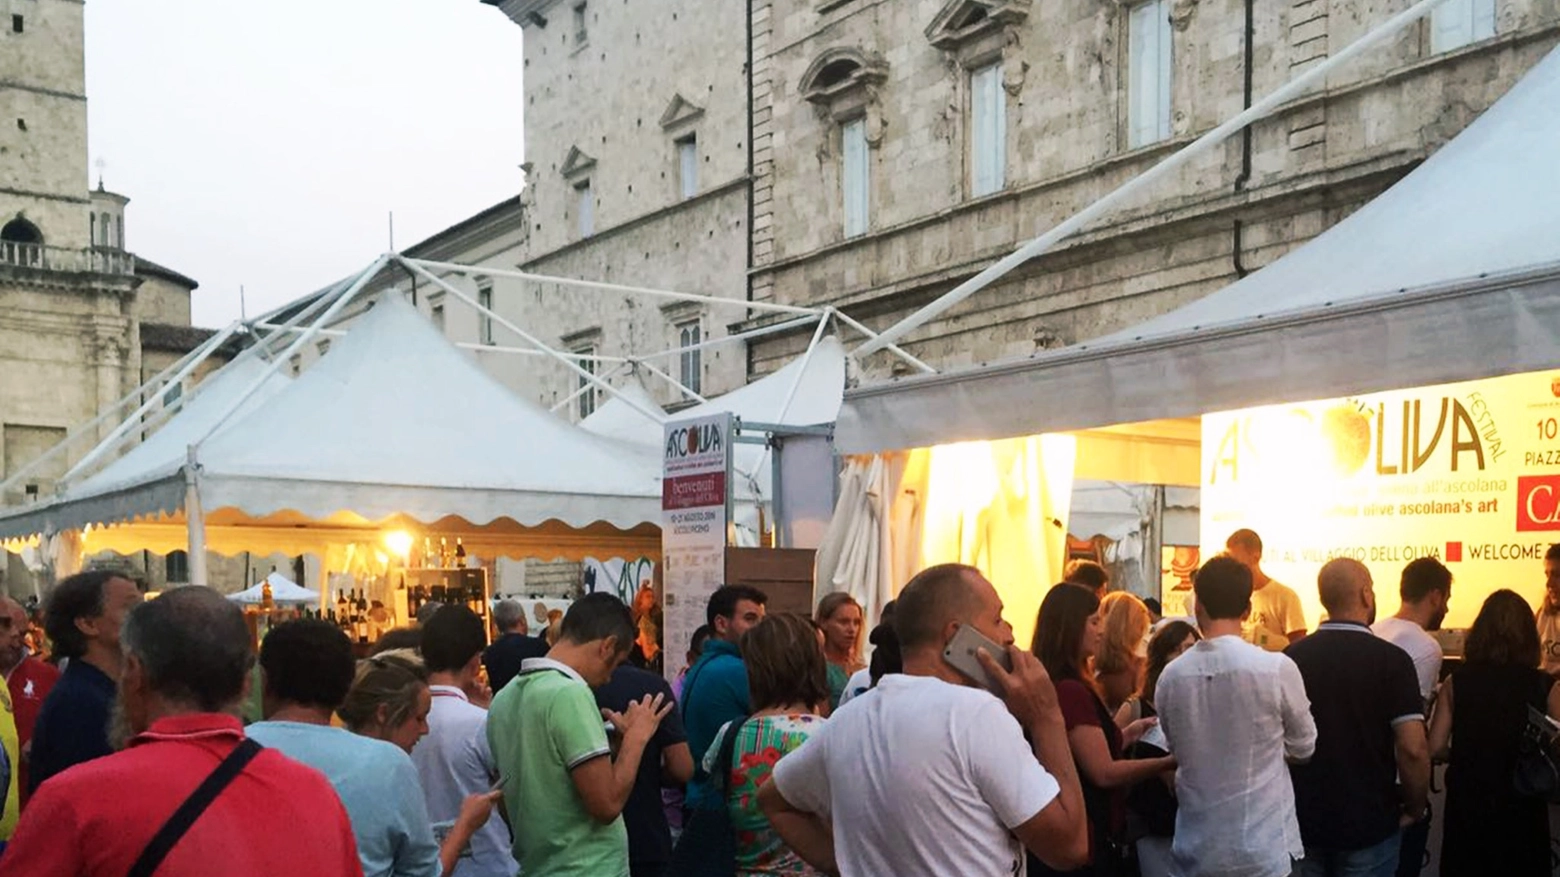 Ascoliva Festival, dal 9 al 19 agosto